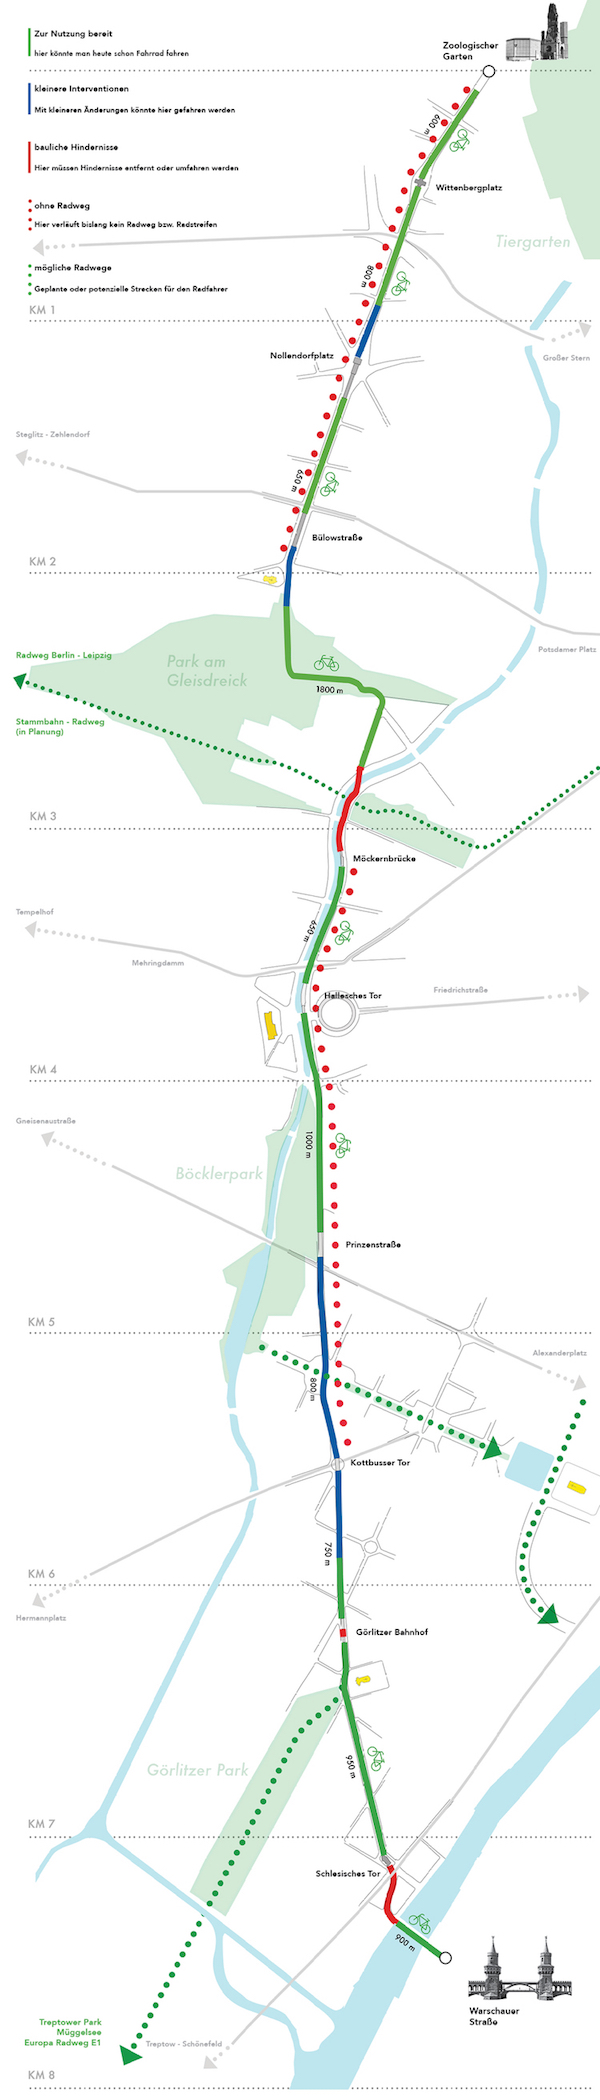 Em verde, as áreas da rota que estão hoje interrompidas ou que são pouco usadas. Em azul, trechos que precisam de pequenas intervenções. Em vermelho, trechos que receberiam uma reforma intensa. O pontilhado verde indica possíveis lugares para construírem outras ciclovias, enquanto o pontilhado vermelho sinaliza onde não existe passagem para bicicletas. Imagem: Radbahn Berlin